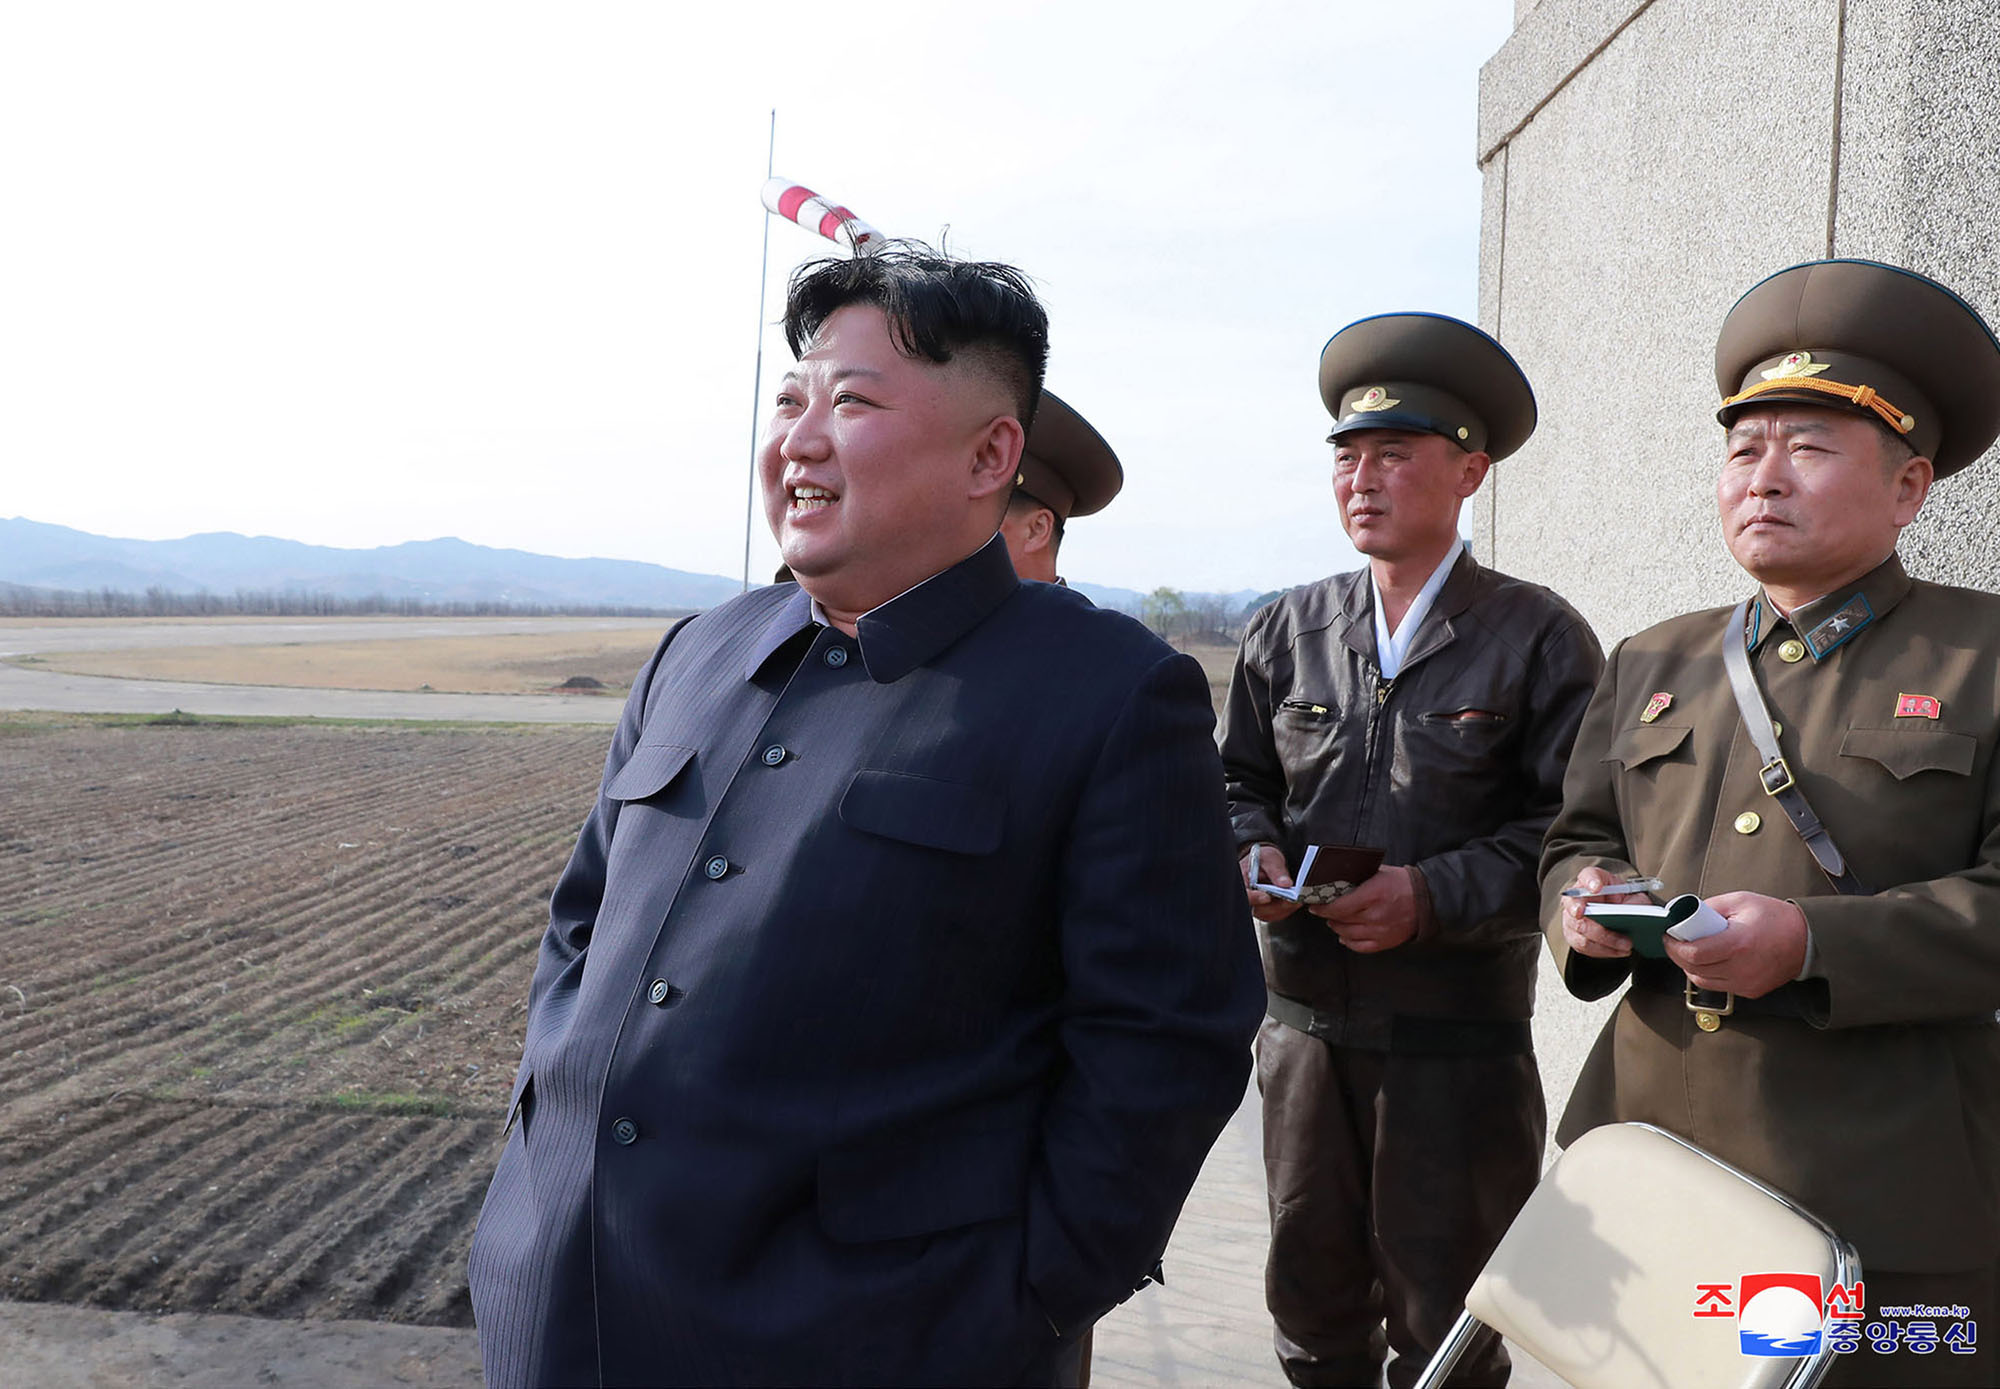 Kështu flet Kim Jong-un: Të përgatitemi për konflikt dhe dialog me Amerikën